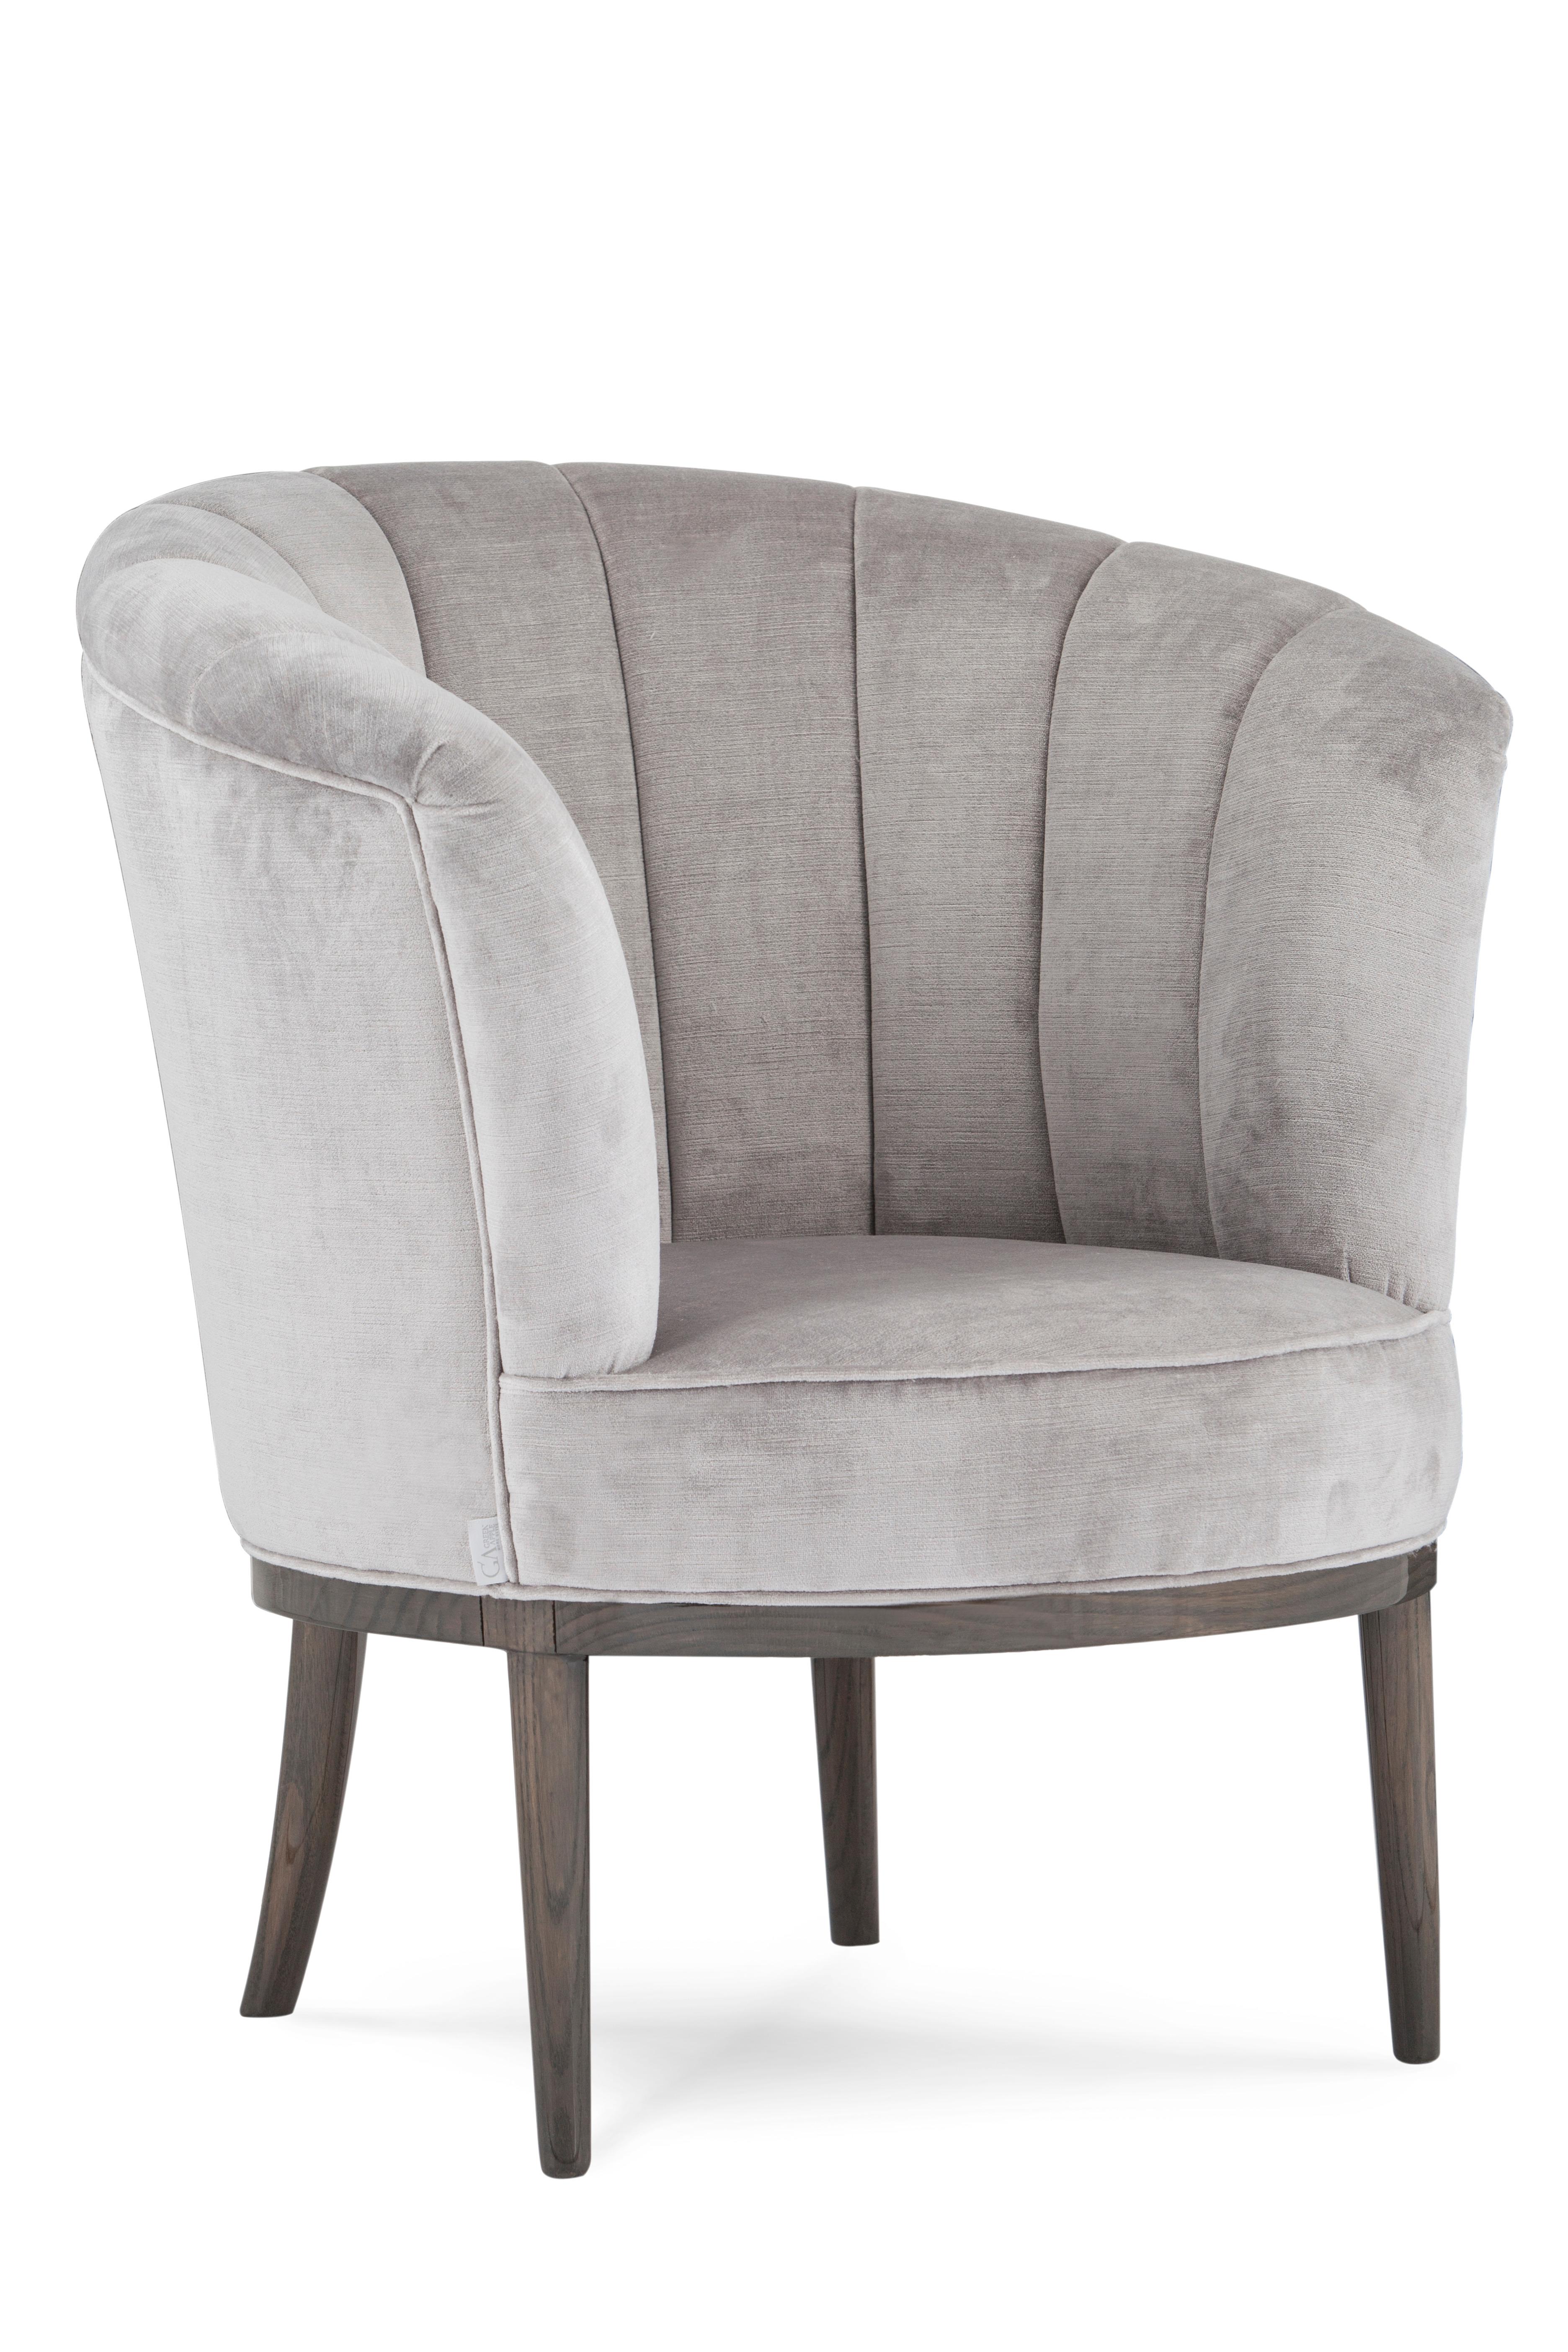 Oak Art Deco Lisboa Lounge Chair Grey Velvet Handmade in Portugal by Greenapple For Sale